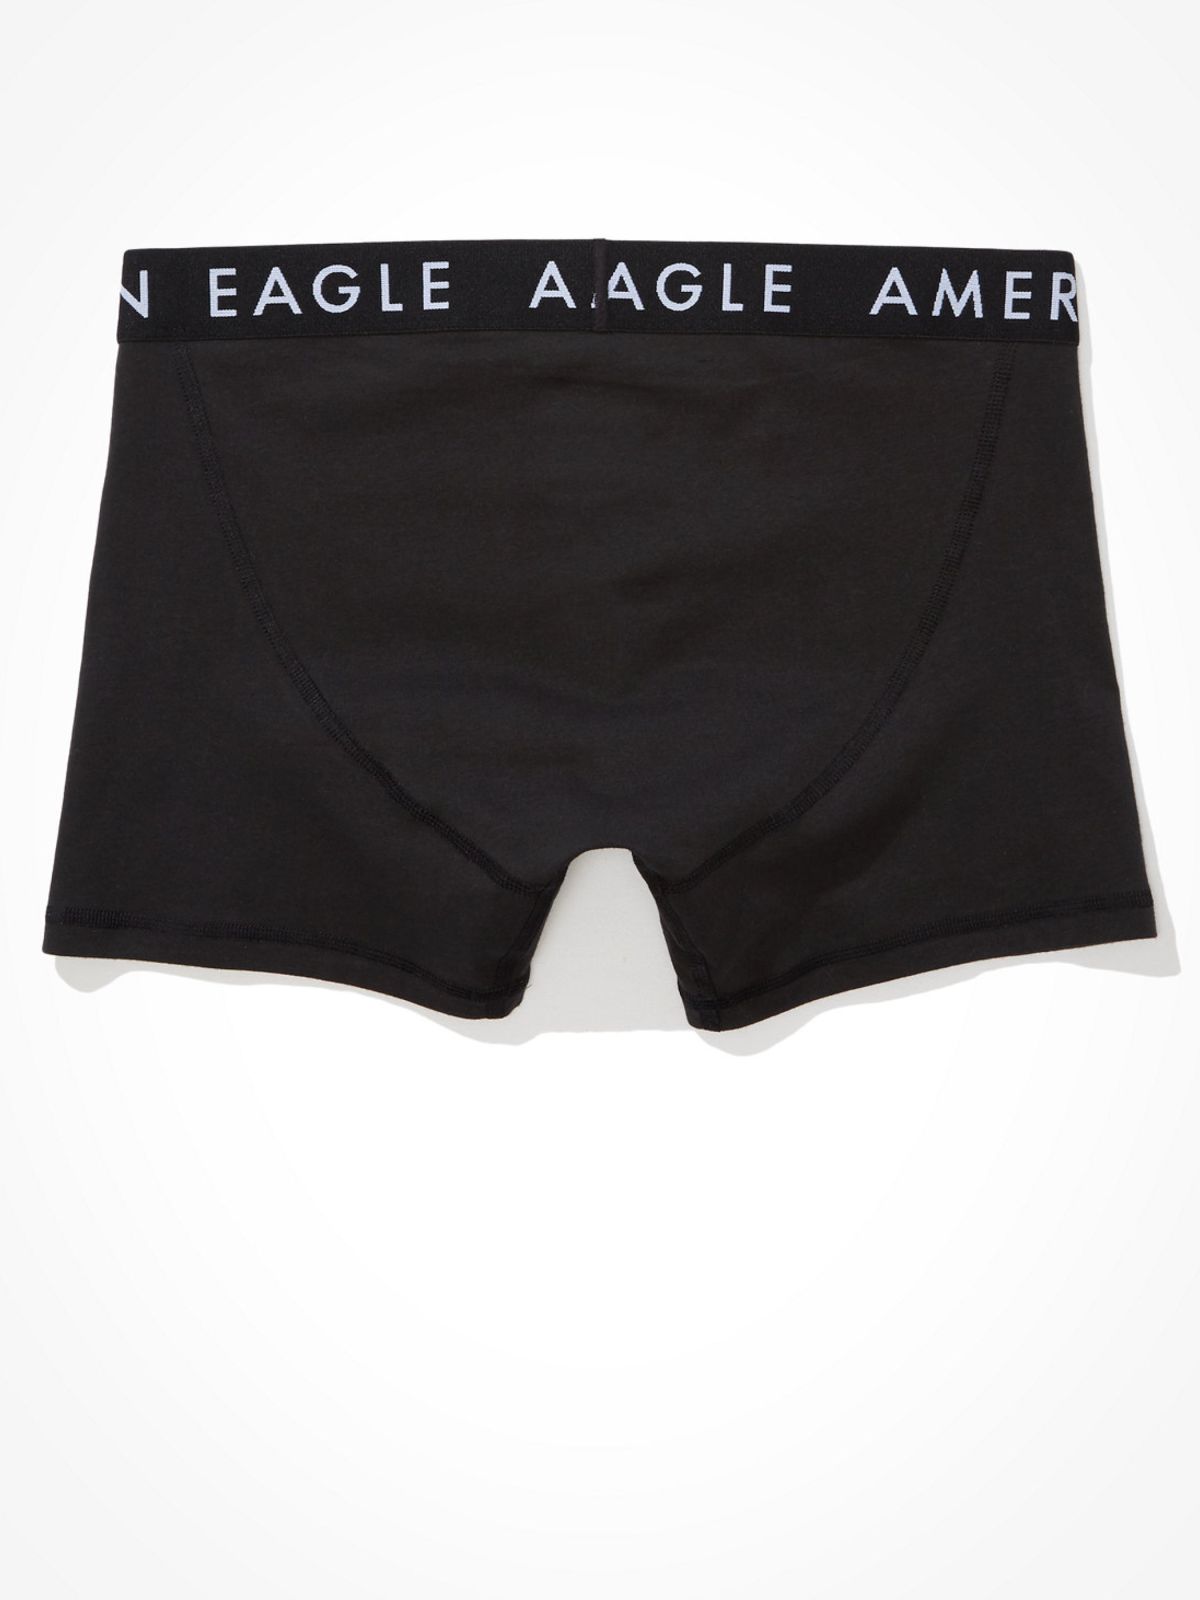  תחתוני בוקסר ג'רסי לוגו של AMERICAN EAGLE